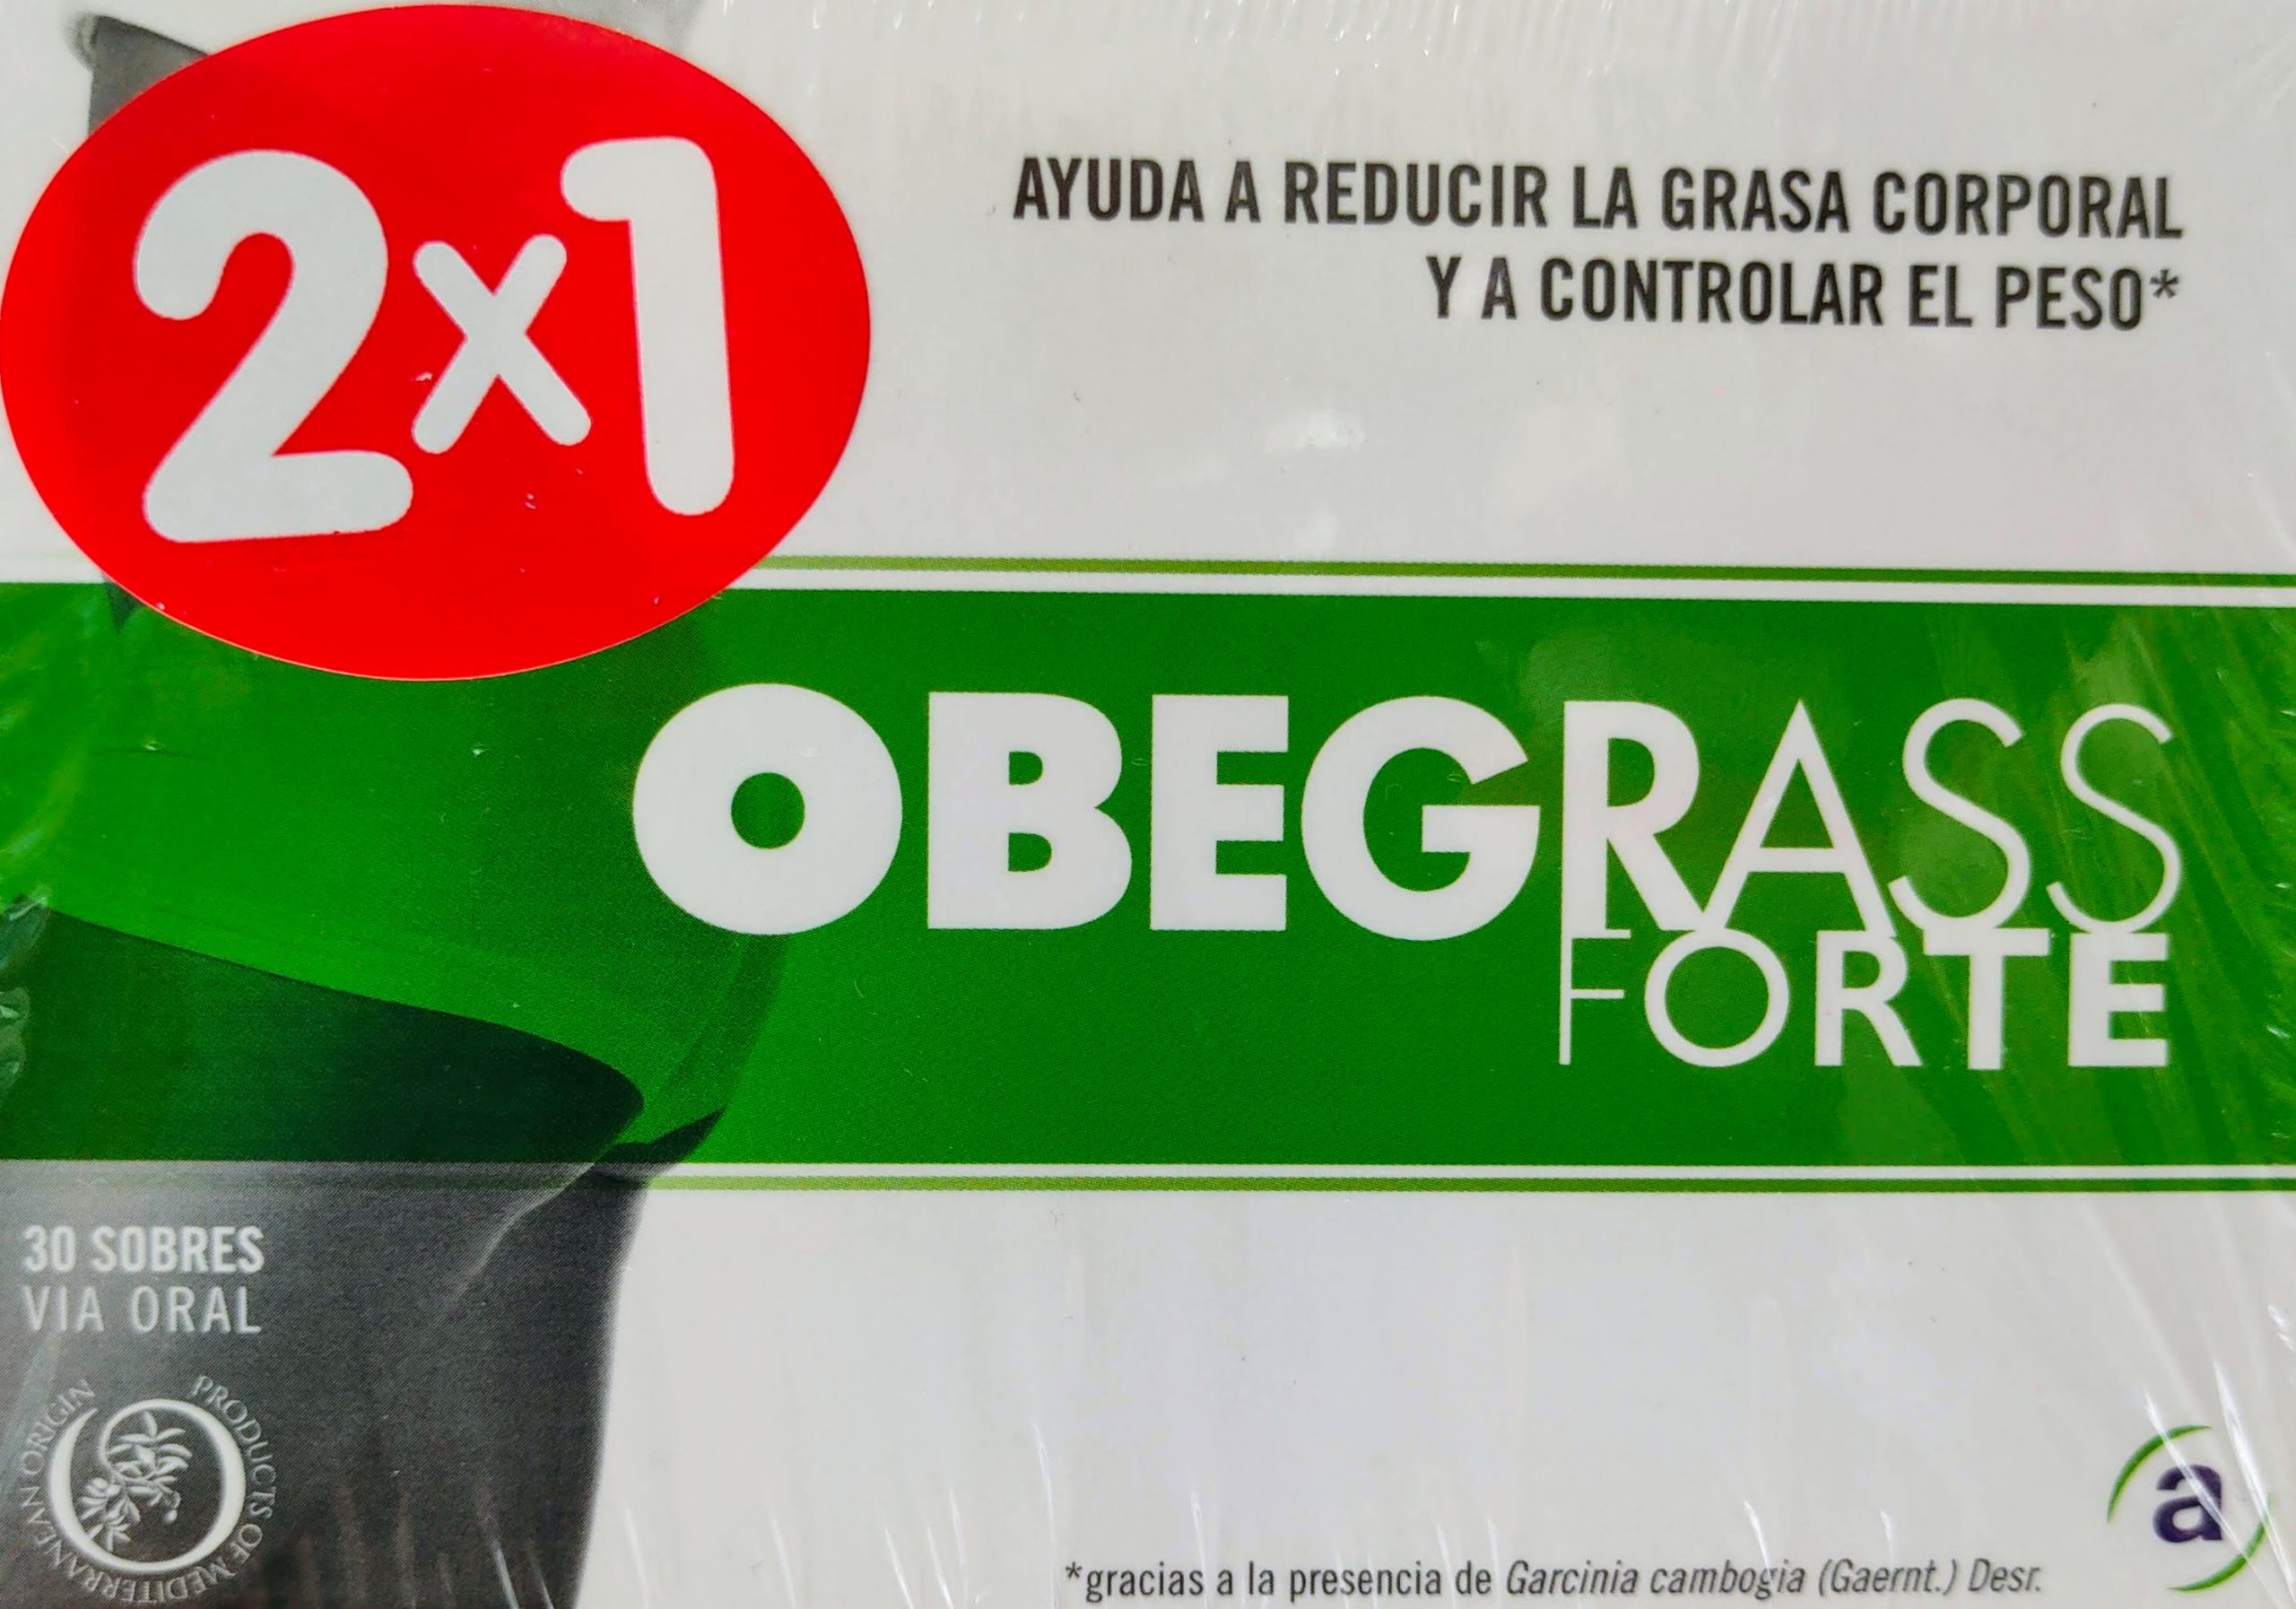 Comprar Obegrass Forte 30 sobres Adelgazar Quemagrasas Obegrass en sobres ayuda a controlar y perder peso de forma rápida y eficaz. Impide la absorción de grasas y regula el tránsito intestinal.